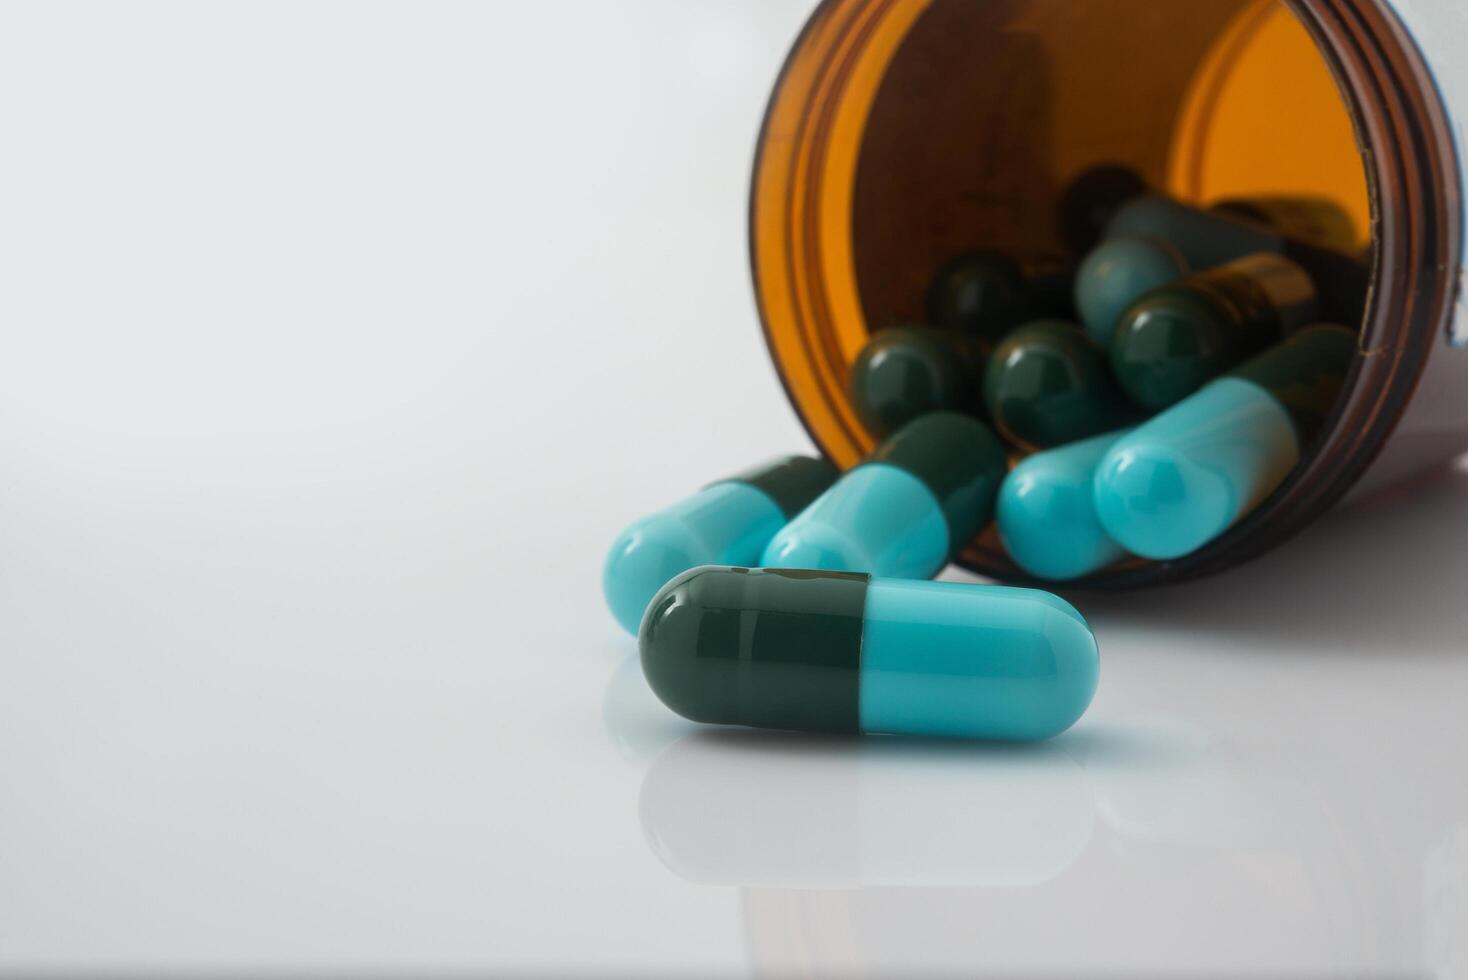 medicinska piller som rinner ut ur en vältad från pillerflaska foto